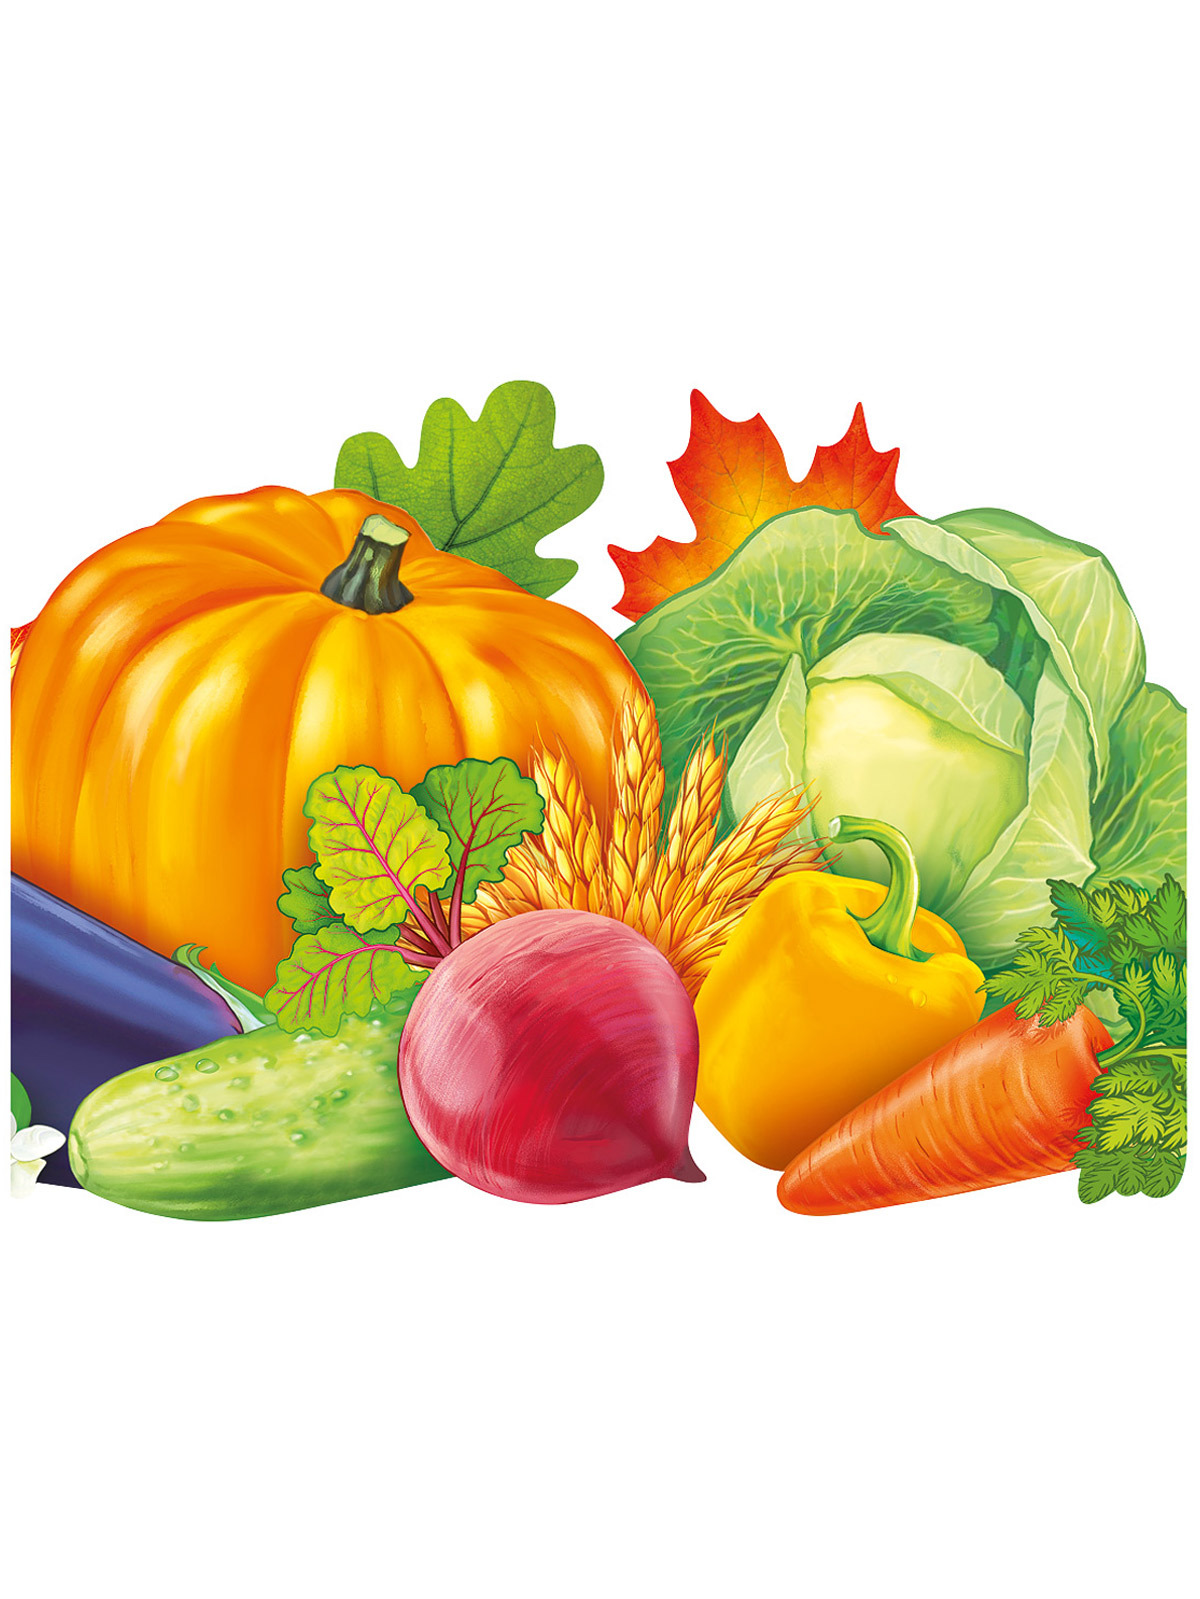 картинки овощей для масок ободков